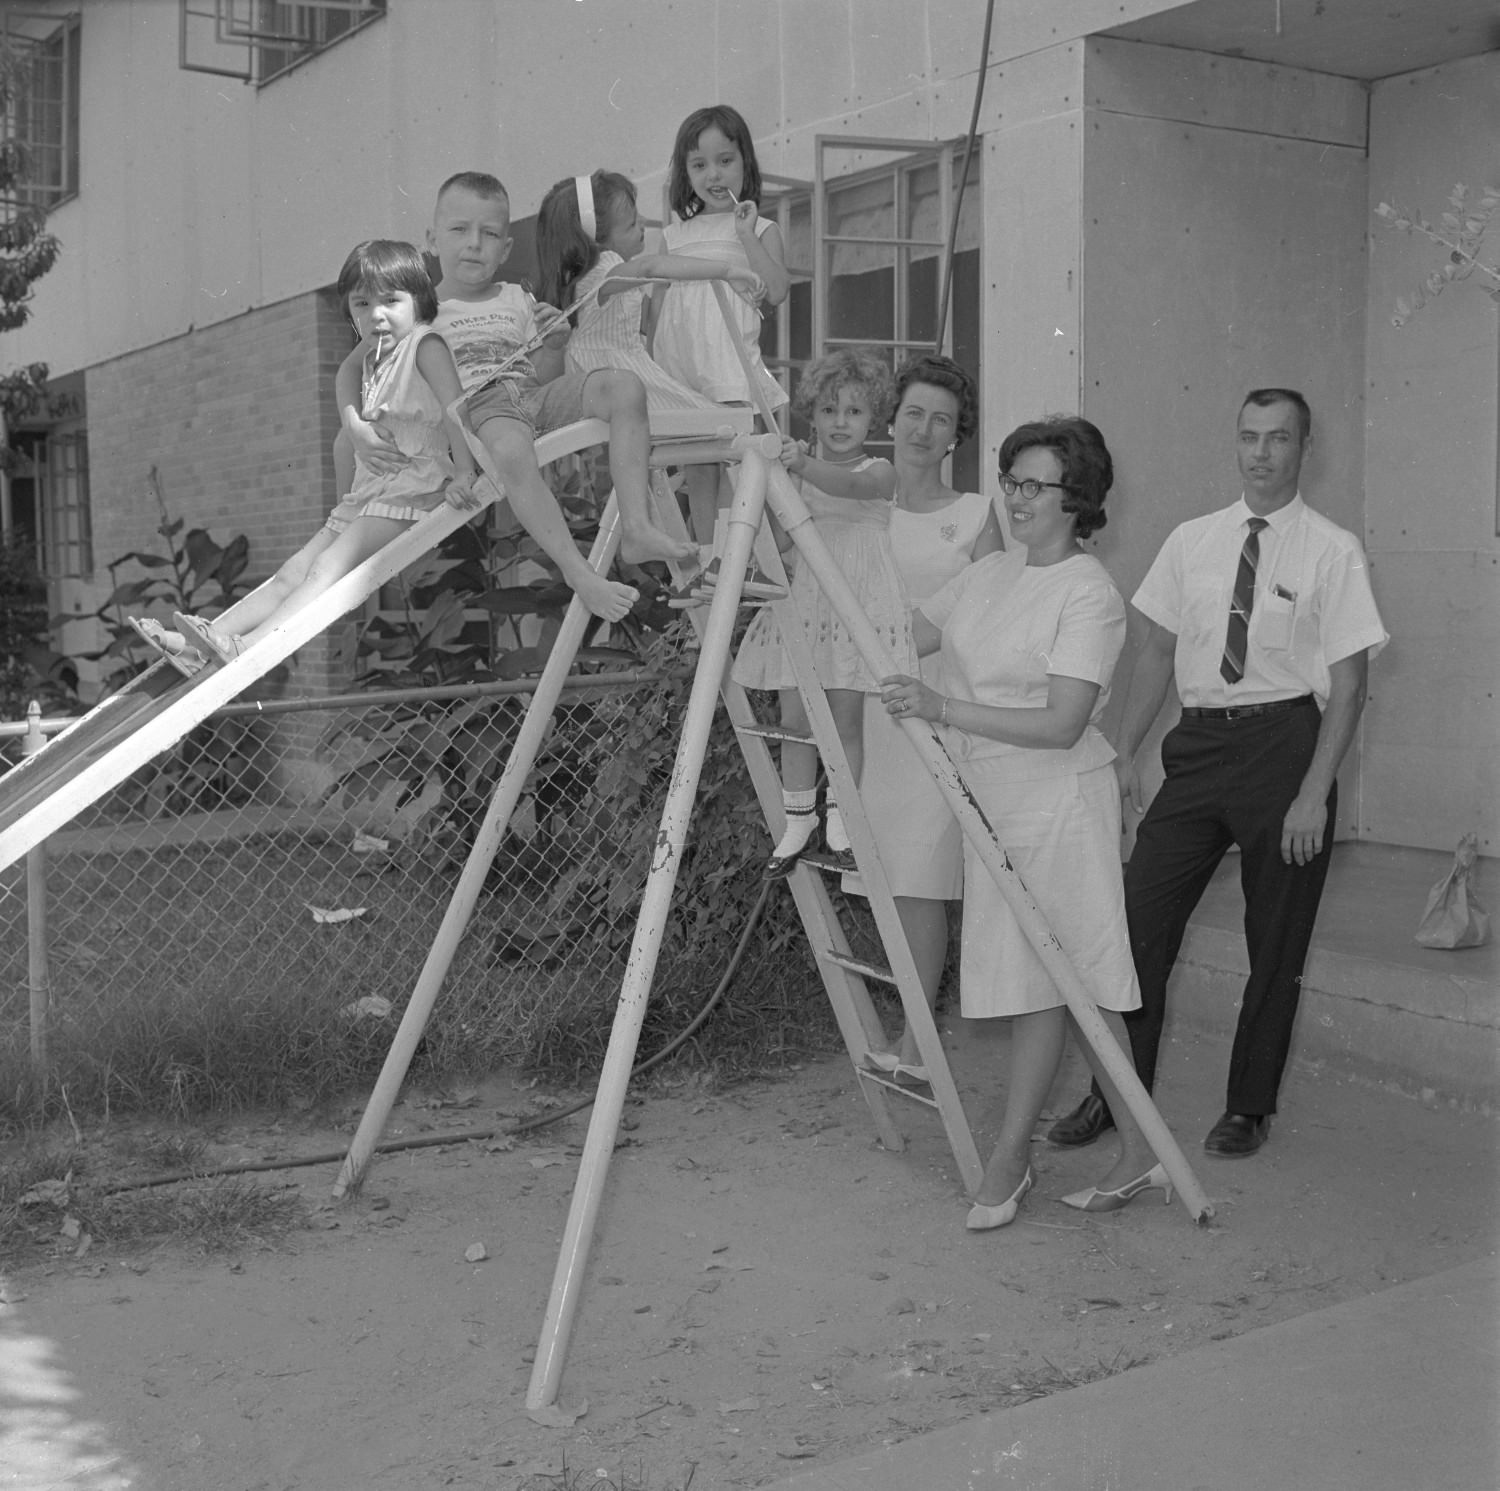 Children on Slide, 1965.